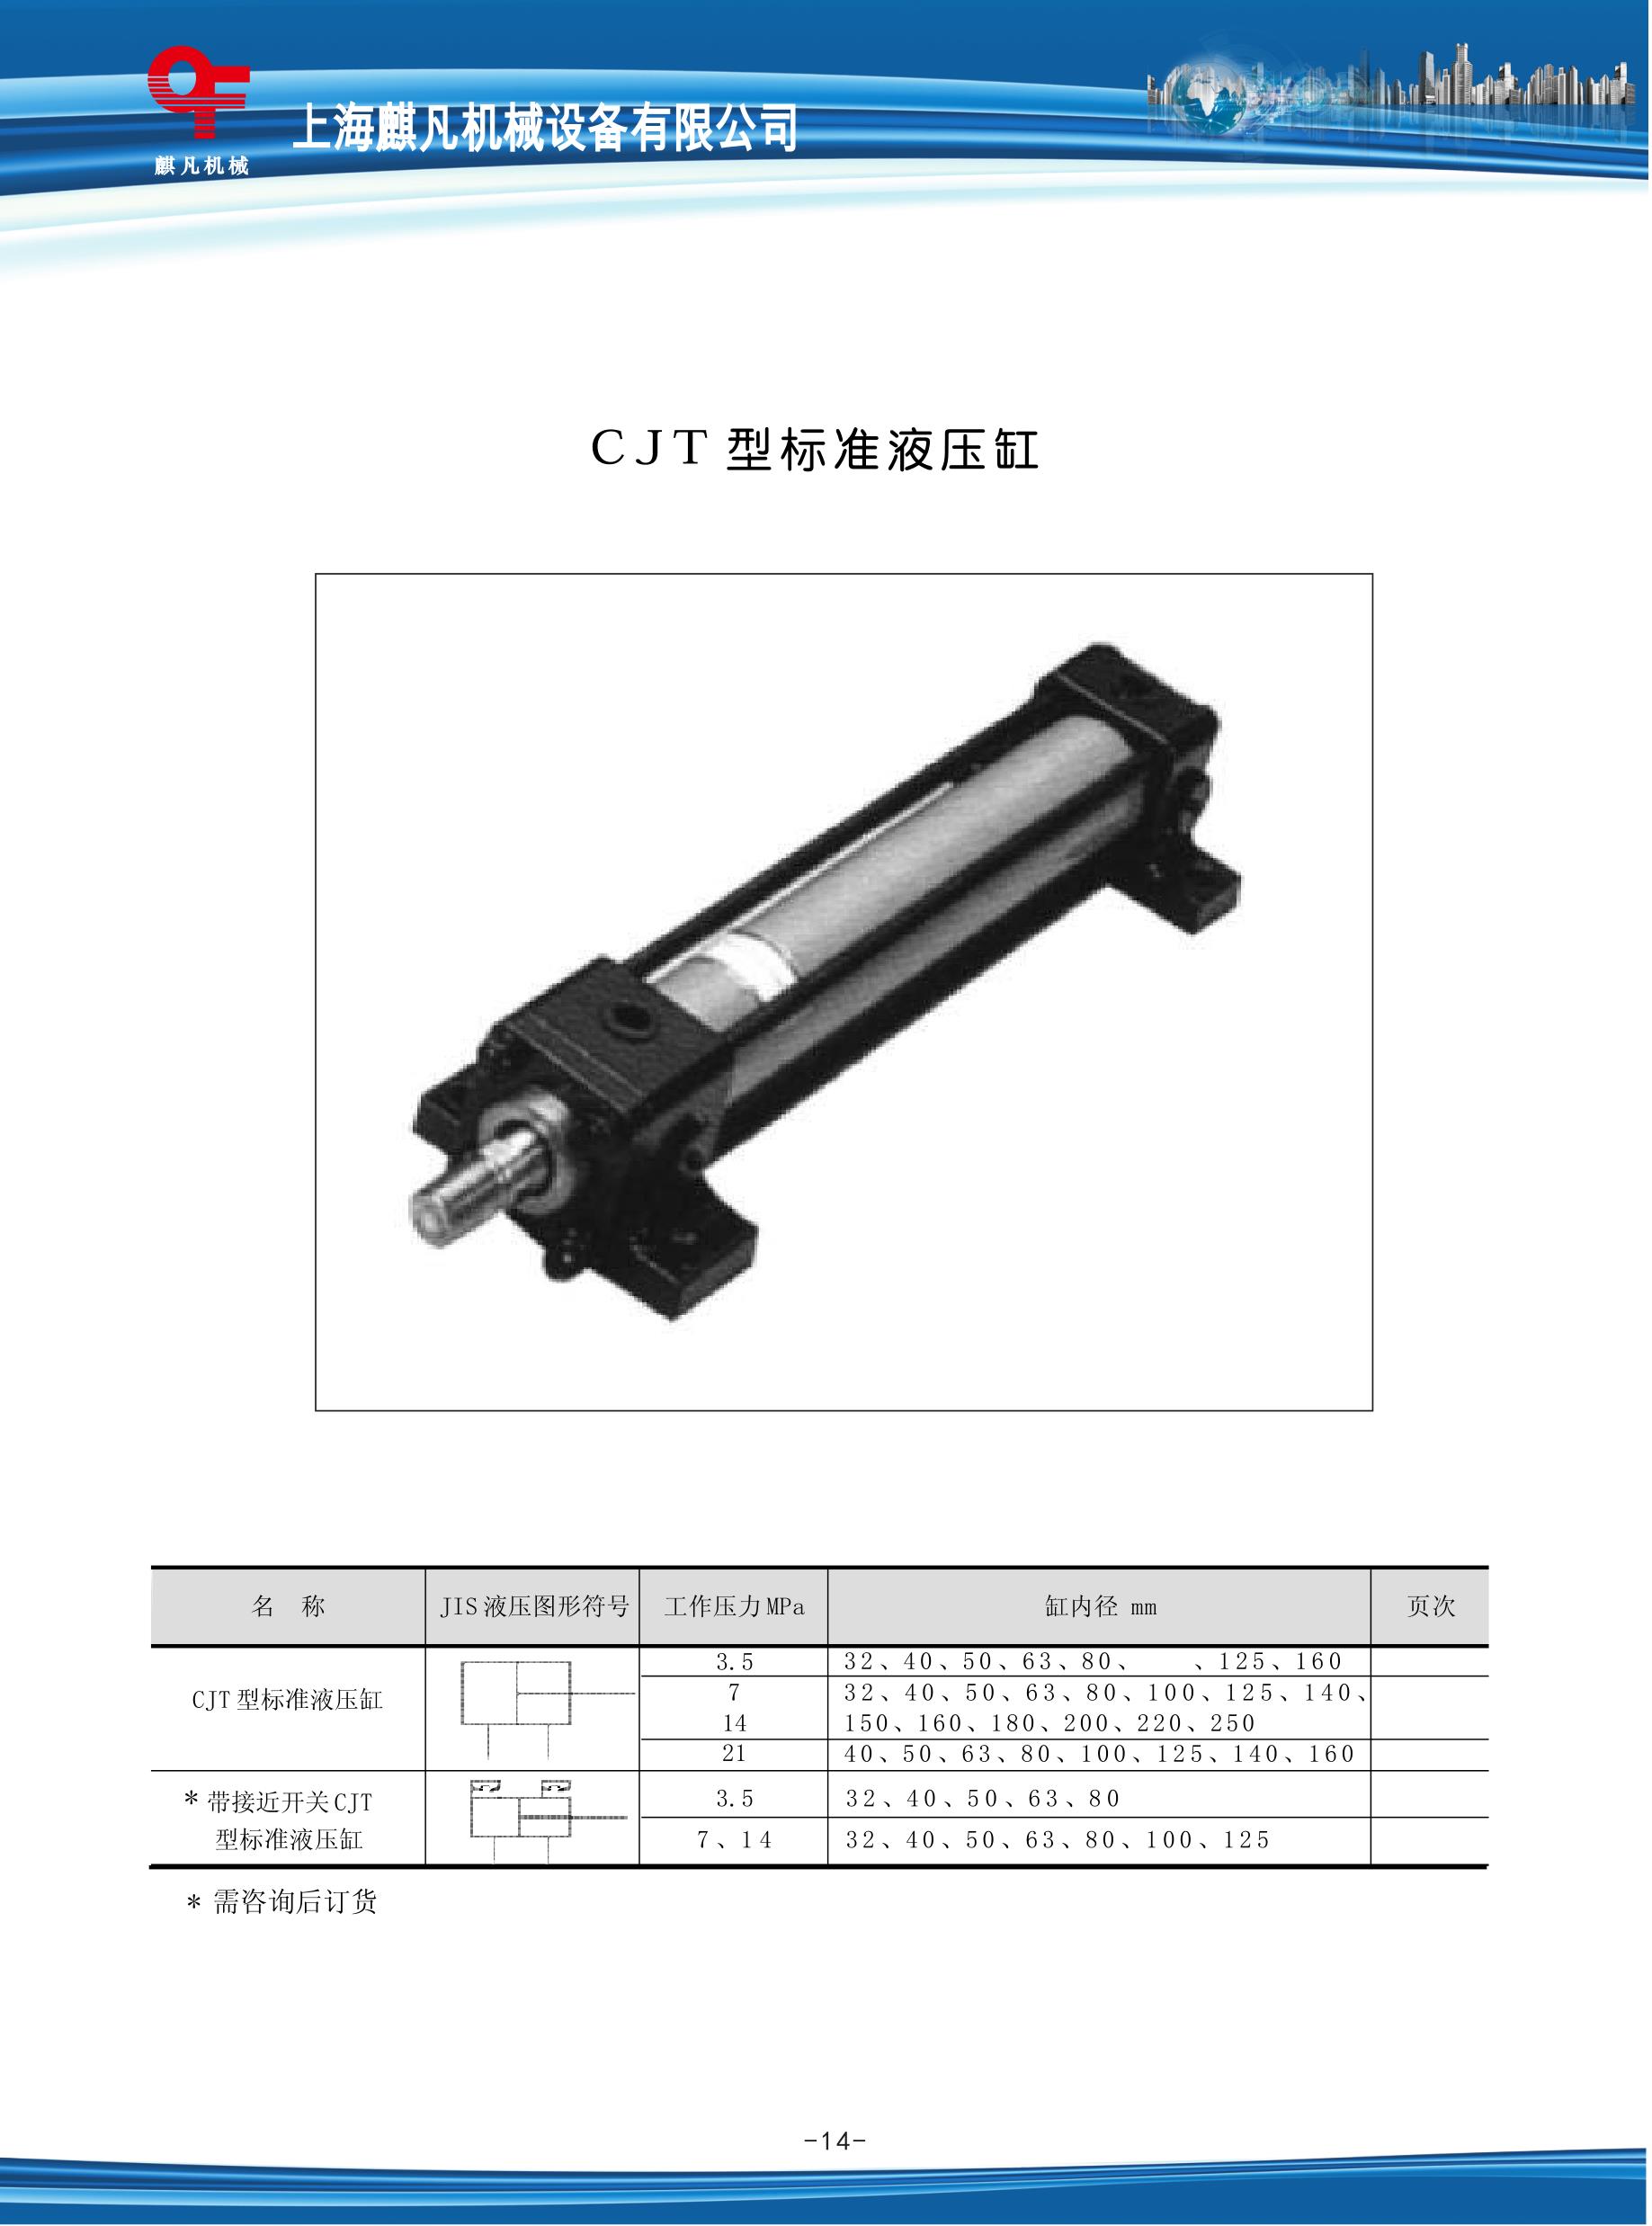 CJT型标准液压缸